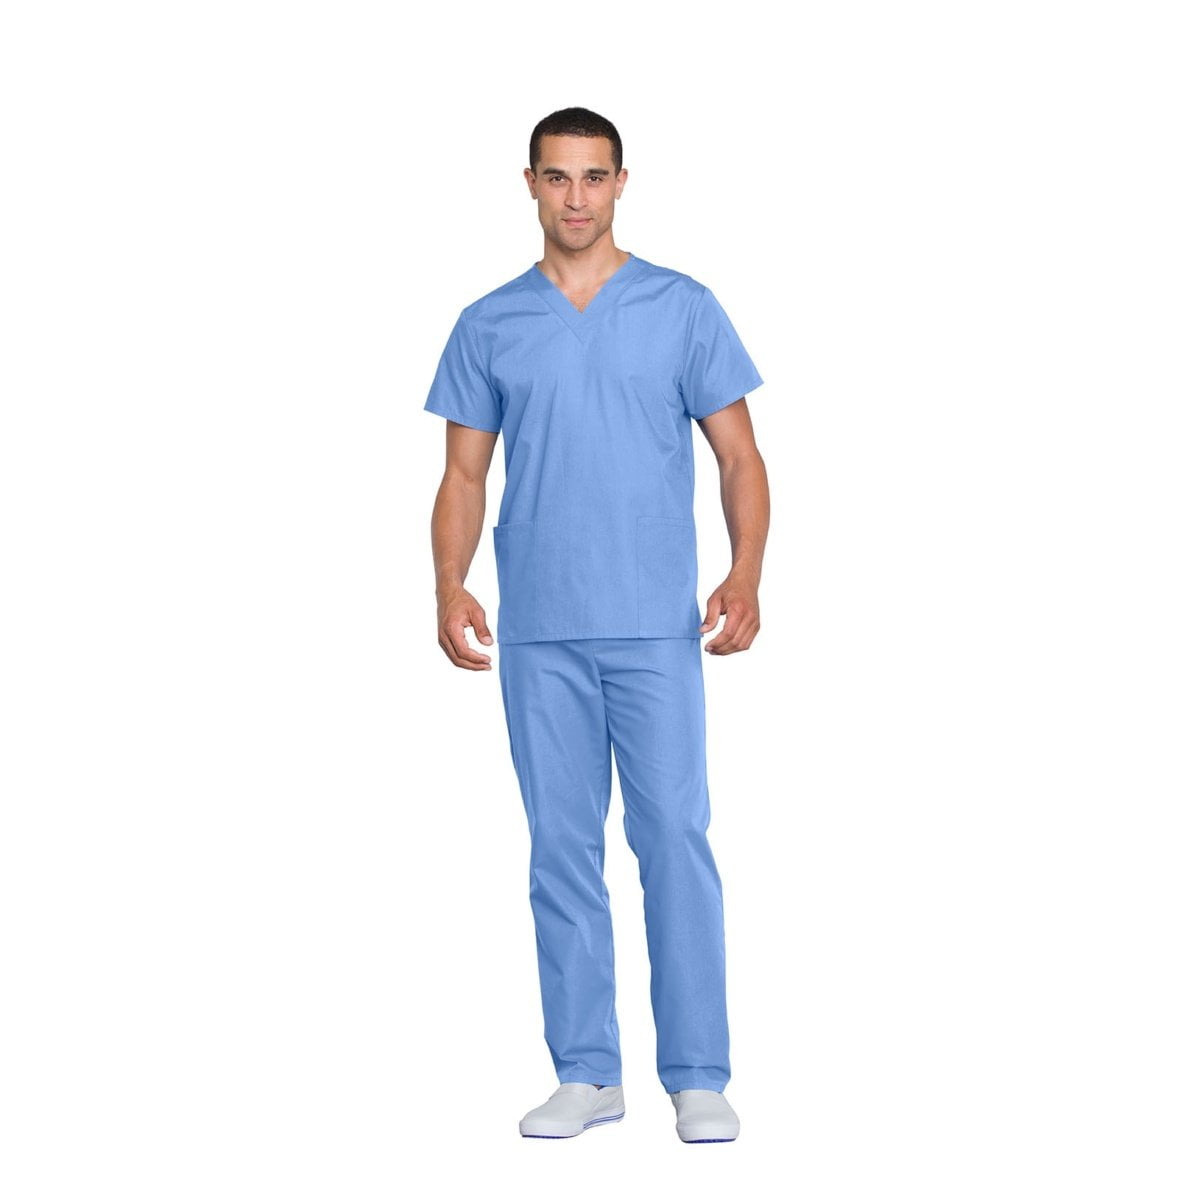 Мужской медицинский костюм Cherokee Original синий . Костюмы для клиник Корпоративные медицинские костюмы Одежда для клиники Спец одежда